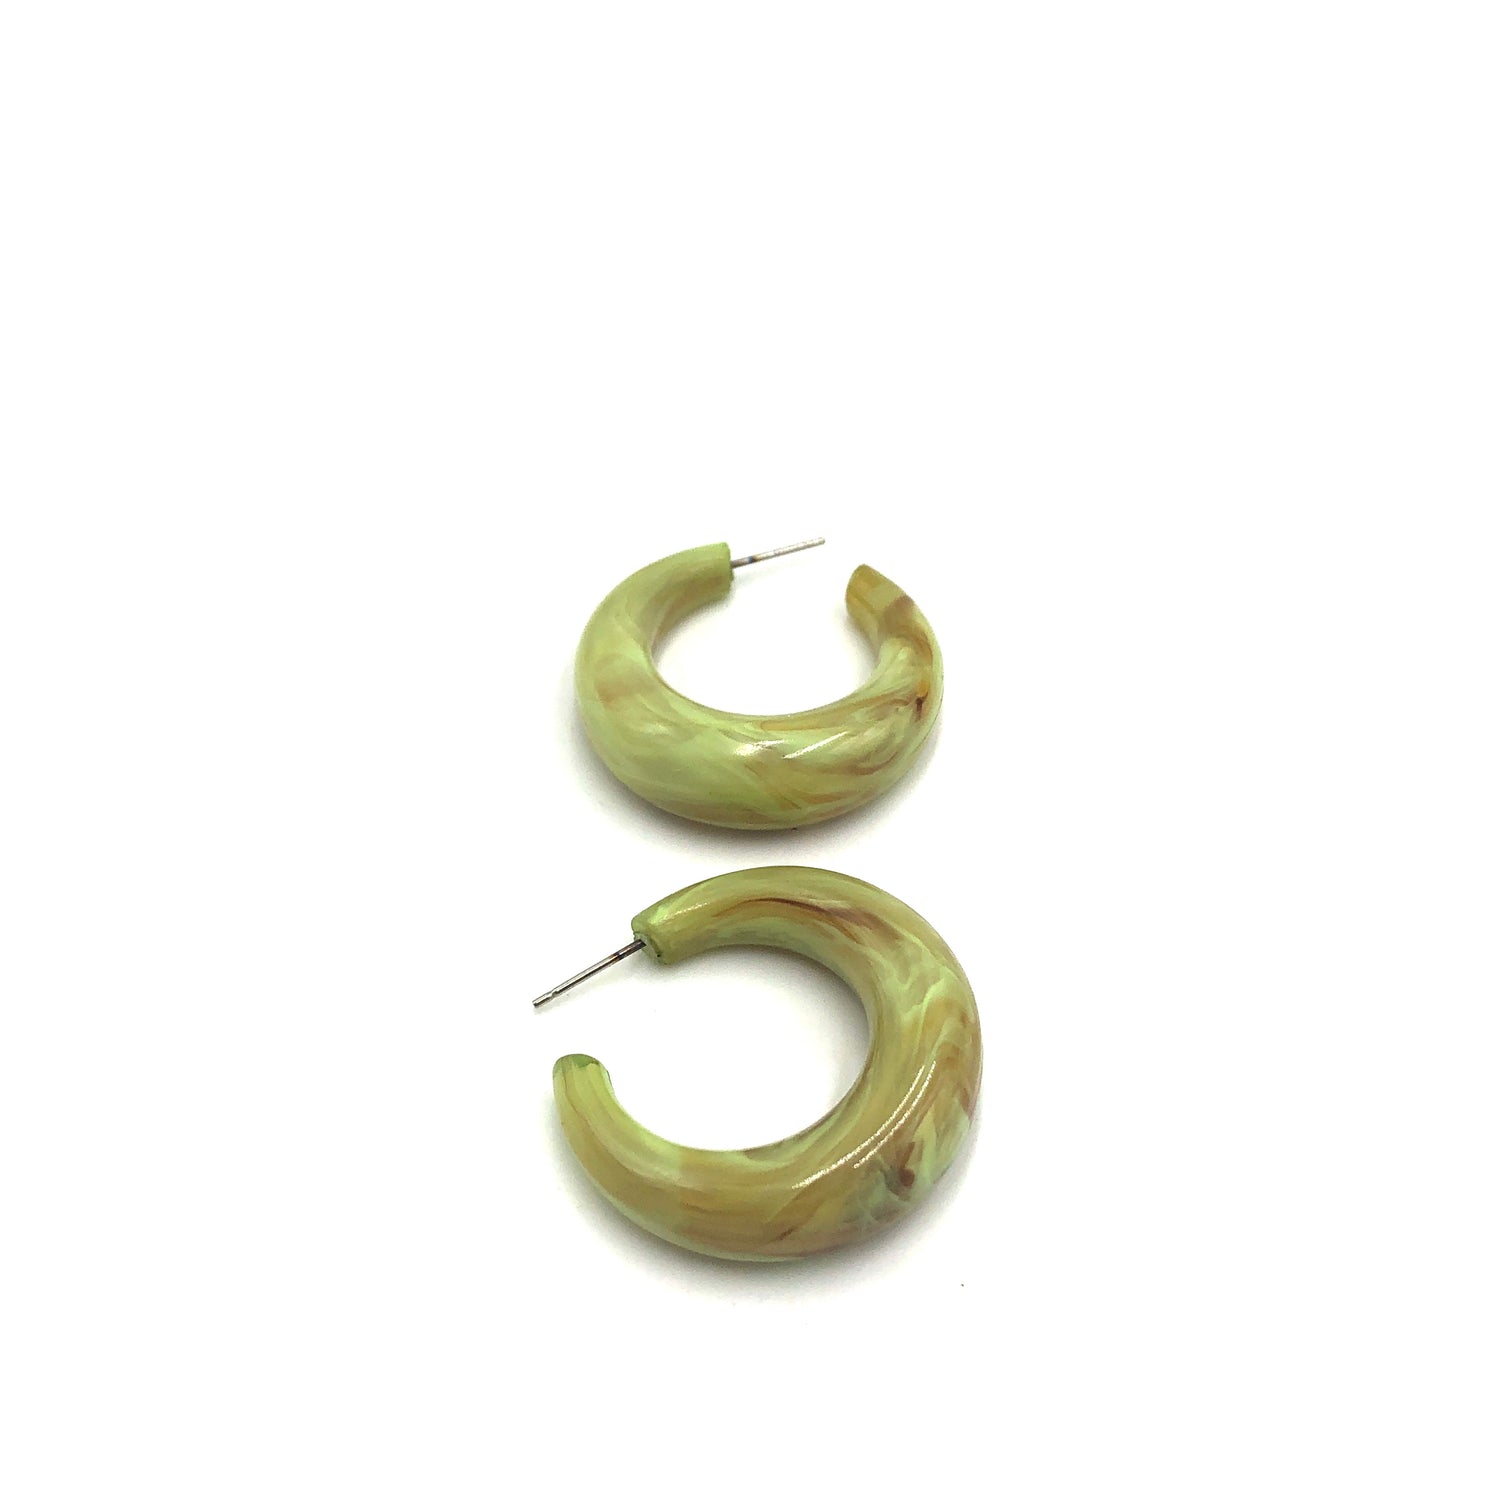 green lucite earrings